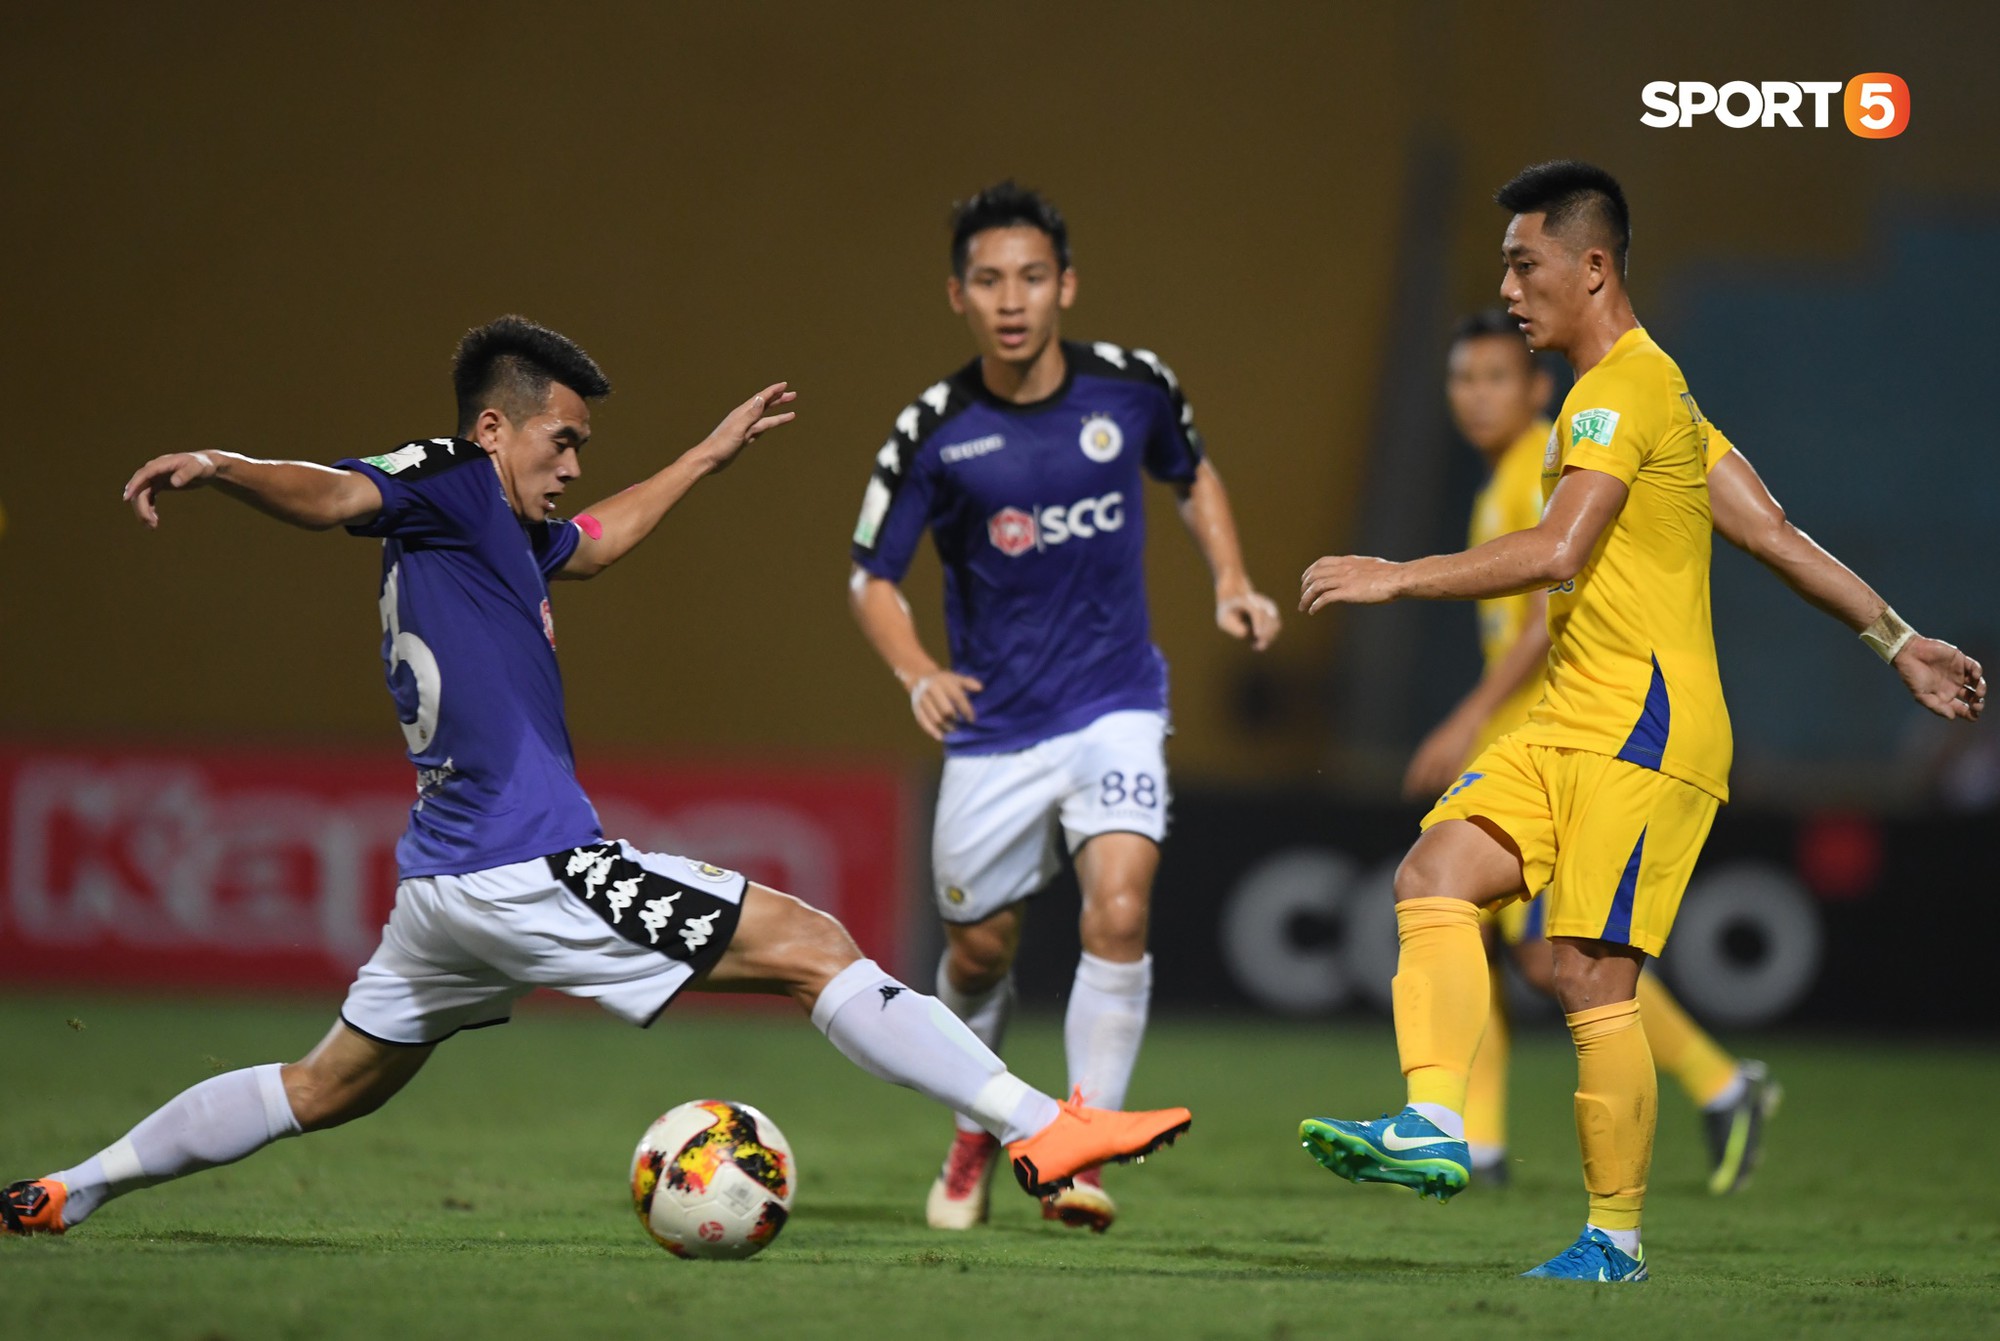 Lâm Ti Phông khen cầu thủ U23 tiến bộ nhanh sau giải châu Á - Ảnh 3.